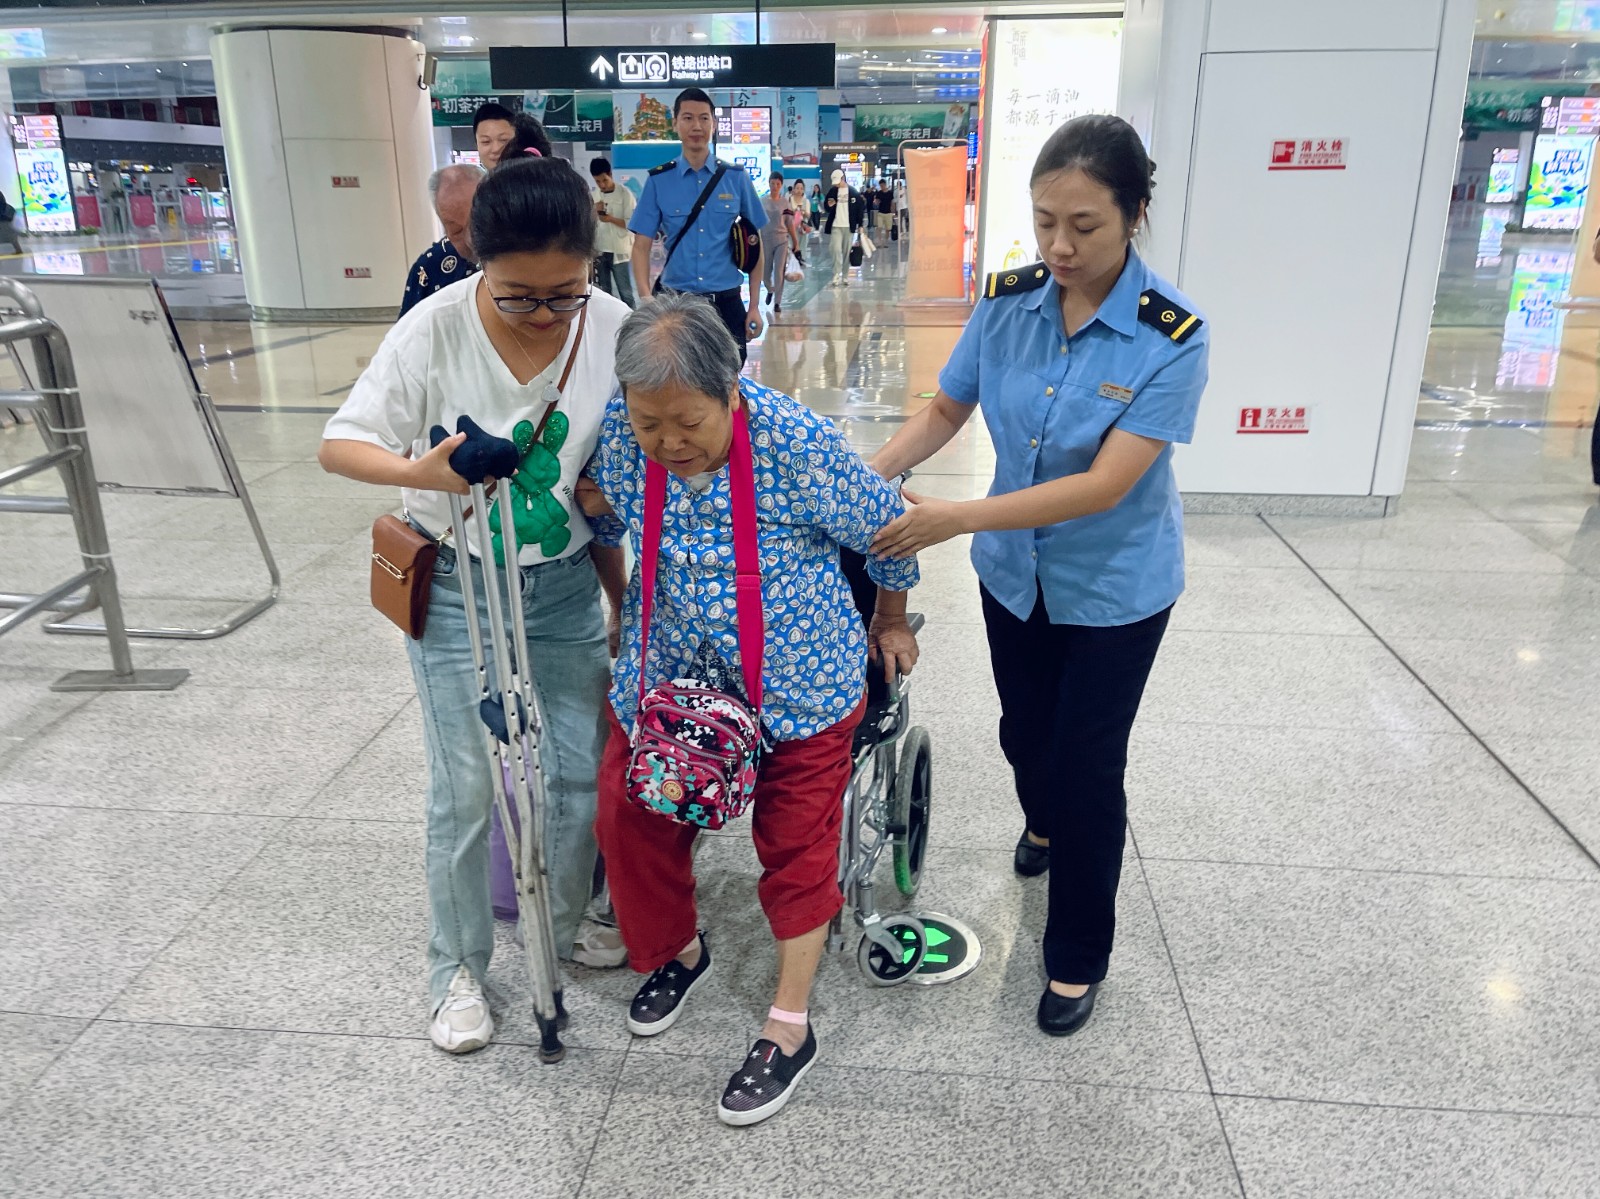 “双节”铁路运输启动 重庆火车站今天发送旅客16万人次